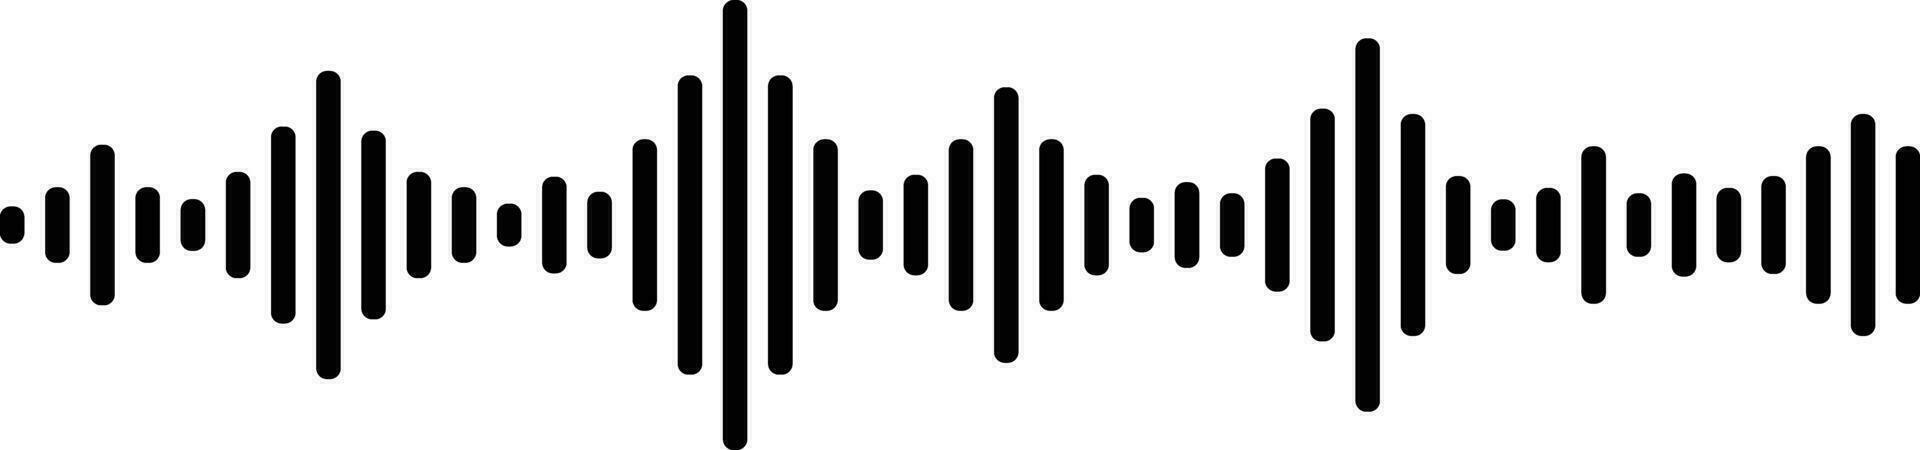 Klang und Audio- Wellen. einfarbig Klang Welle Linien. Klang Wellen Rhythmus Symbol. Volumen Audio- Waage Linien. Vibration und pulsierend Linien. analog und Digital Audio- Signal. Musik- Equalizer vektor